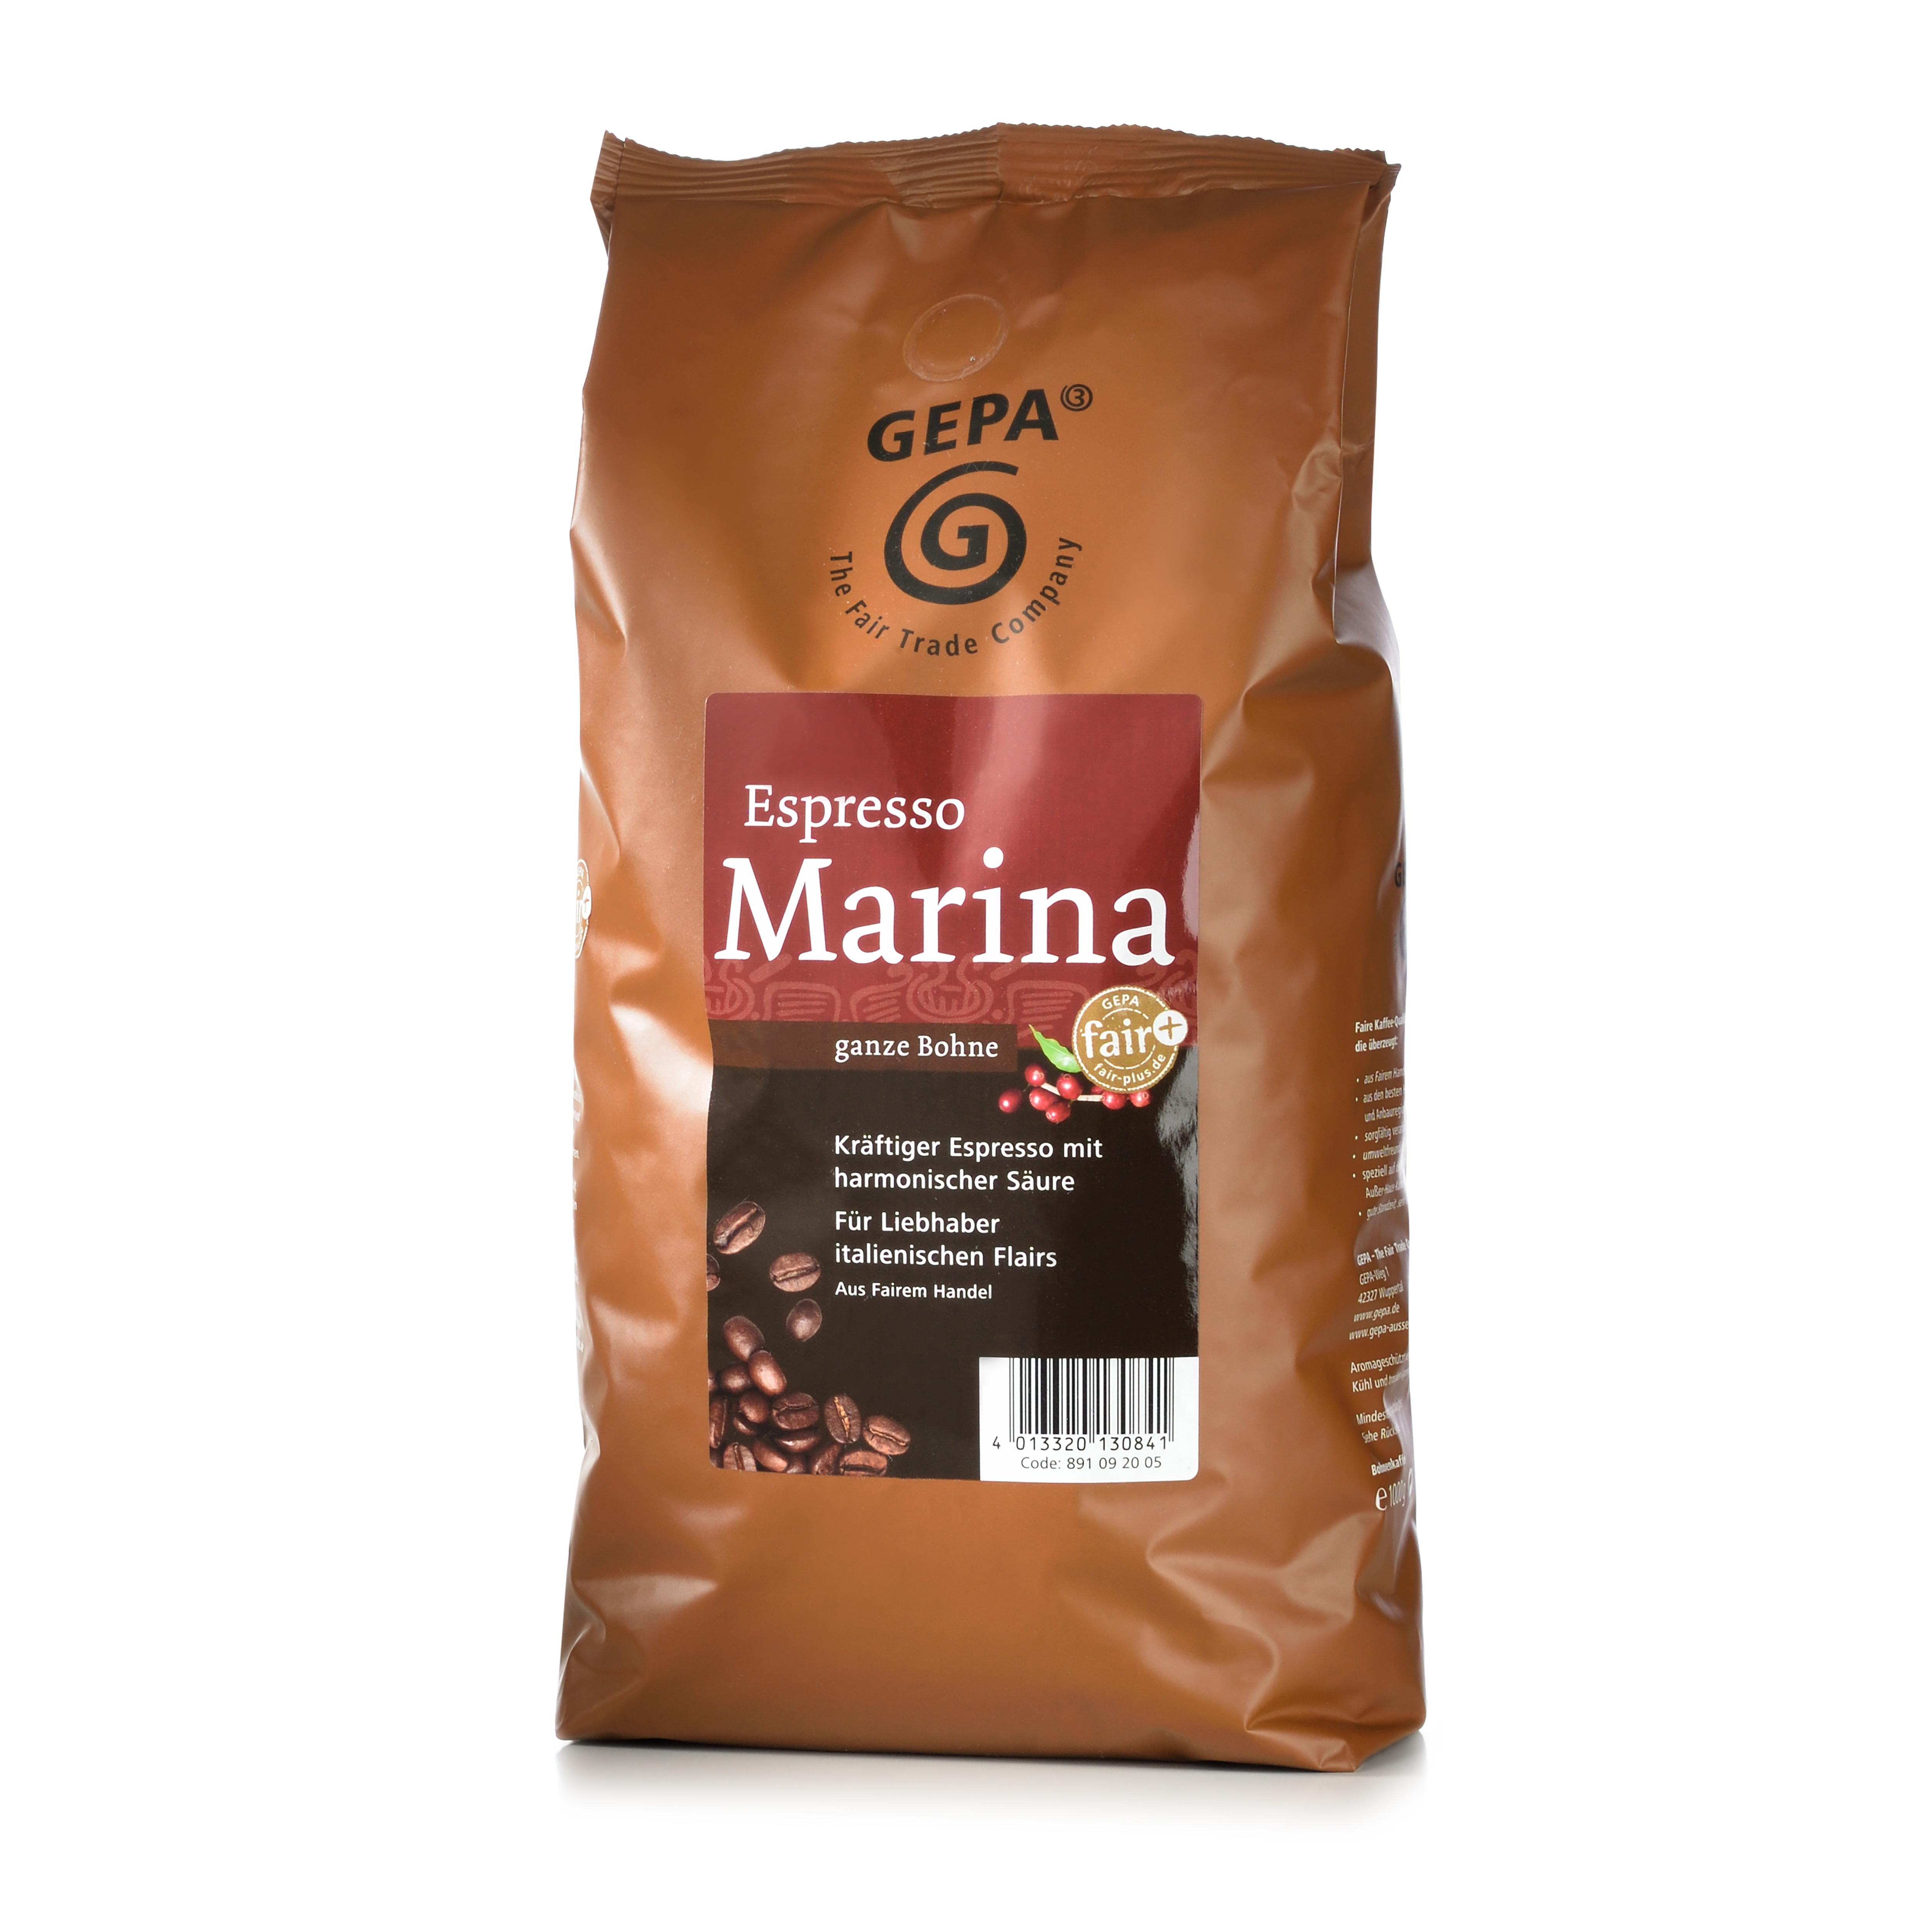 Gepa Cafe Marina Espresso 1kg - Ganze Bohne